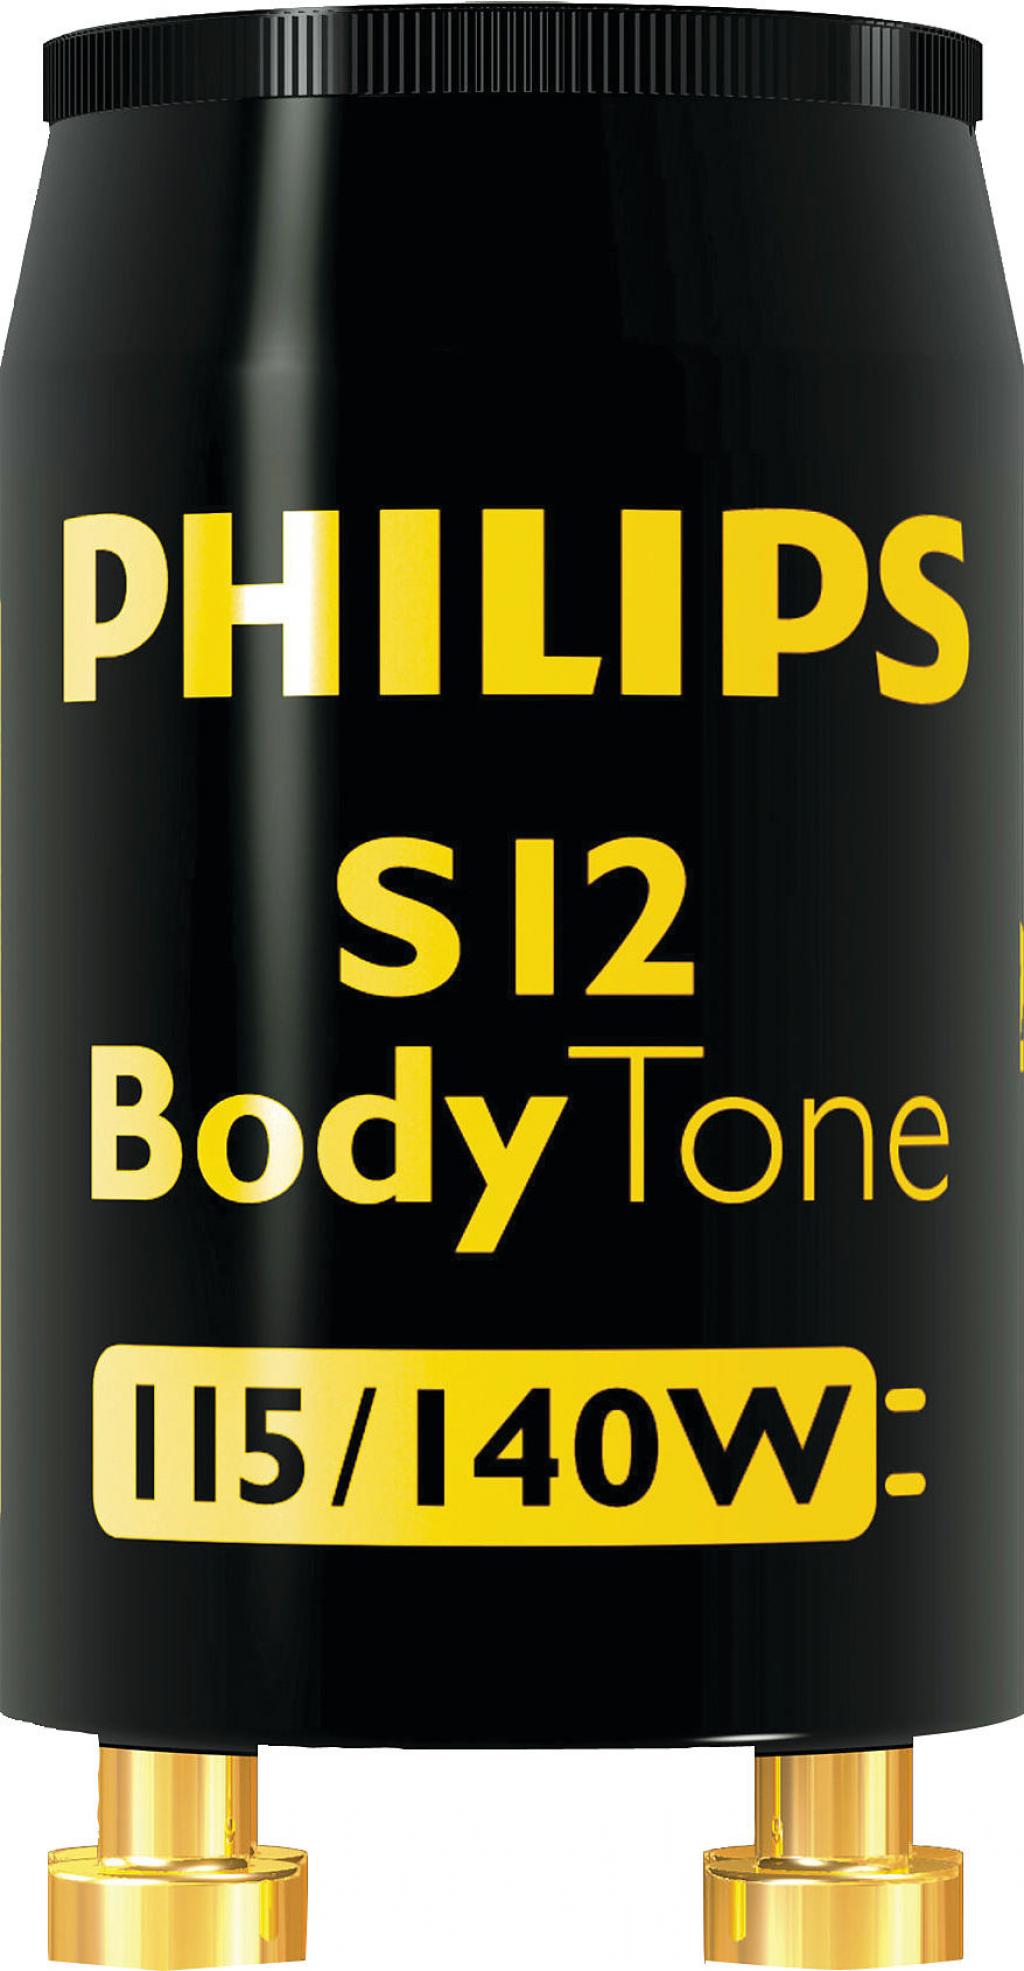 Philips Fénycső gyújtó S12 115/140W 220-240V 